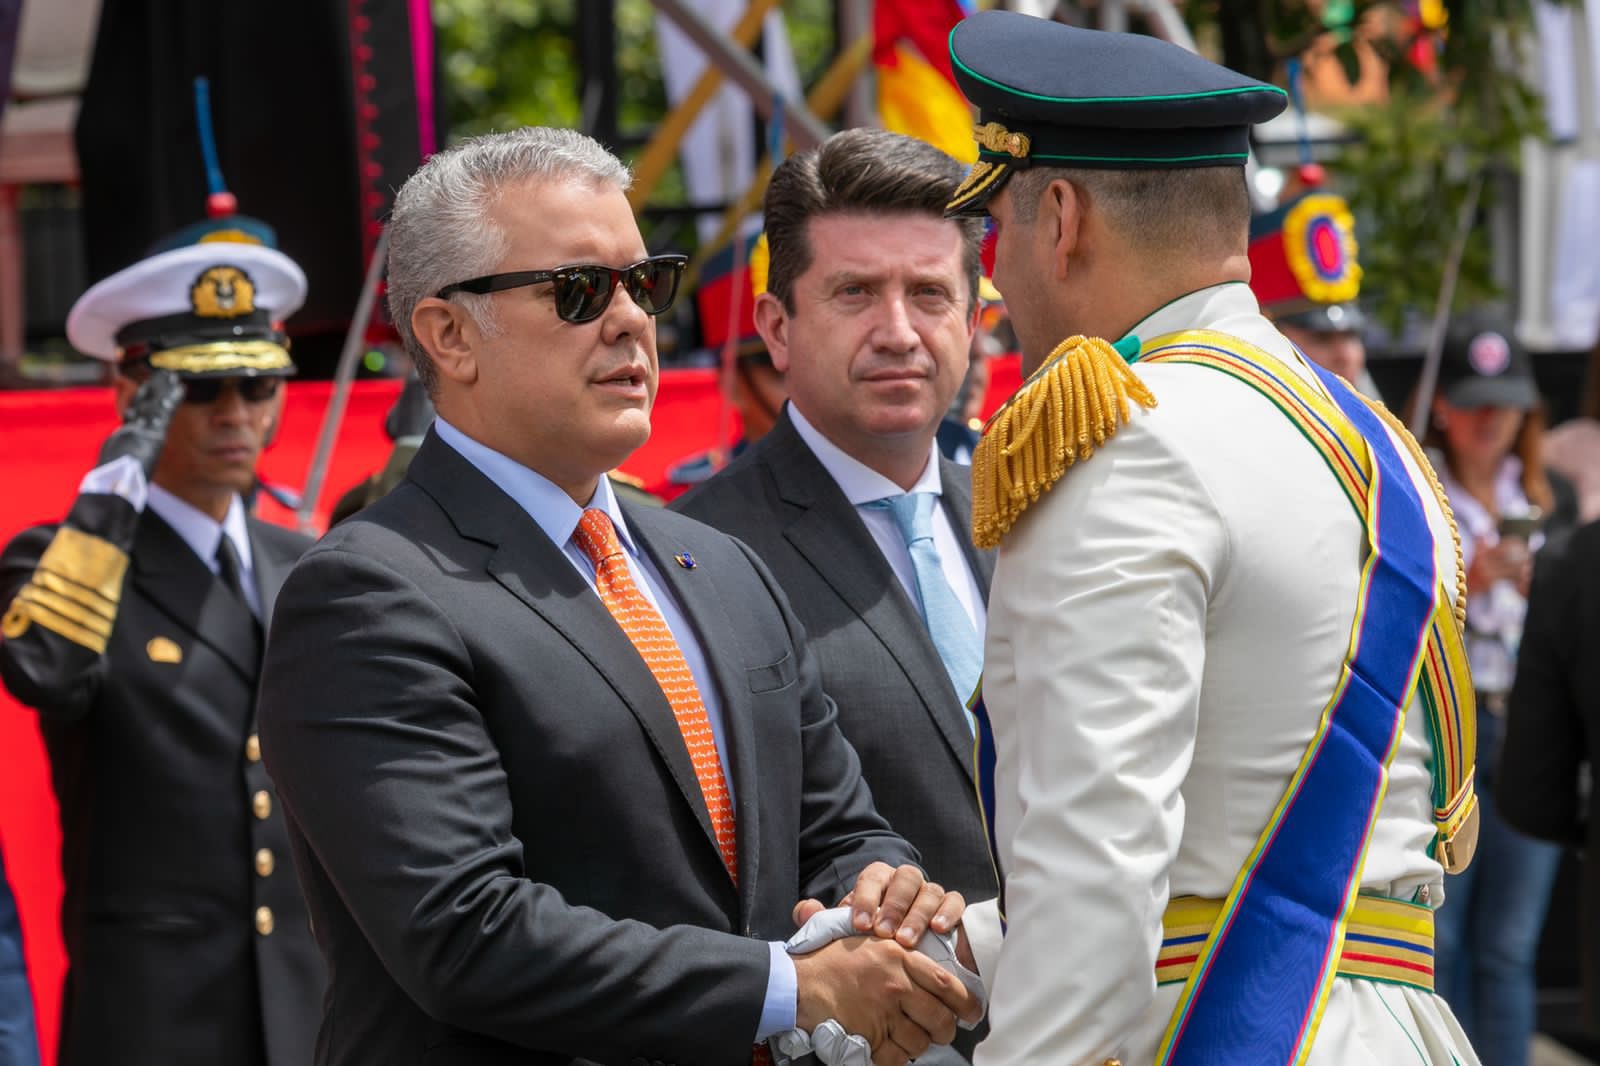 El presidente Duque saluda a un oficial del Ejército A su lado el ministro de Defensa, Diego Molano.